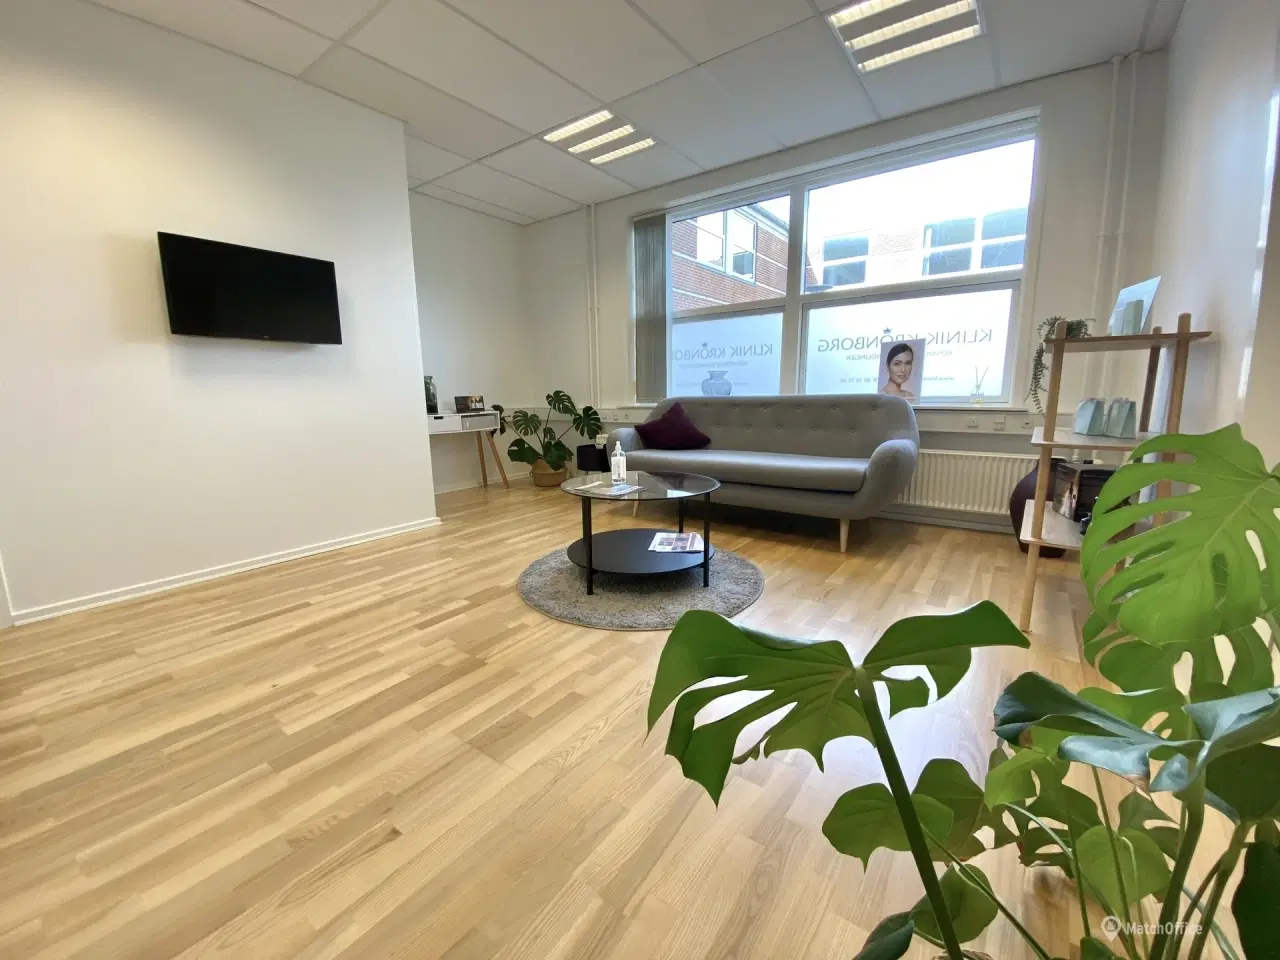 Billede 4 - 112 m² kontor/klinik lokale i velplaceret ejendom i Middelfart